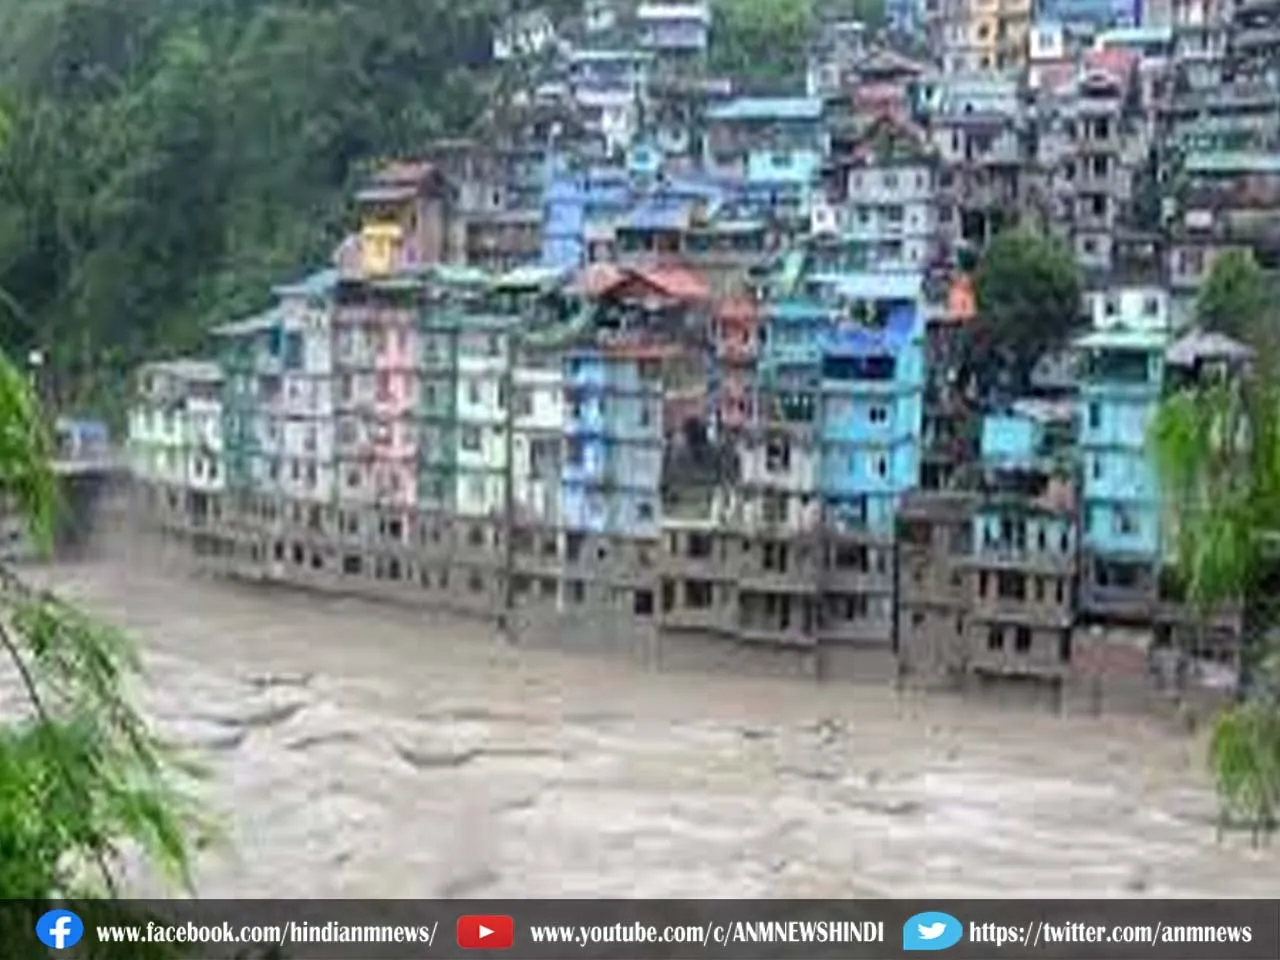 West Bengal: कलिम्पोंग में अचानक आई बाढ़ के कारण इतने करोड़ रुपये का नुकसान